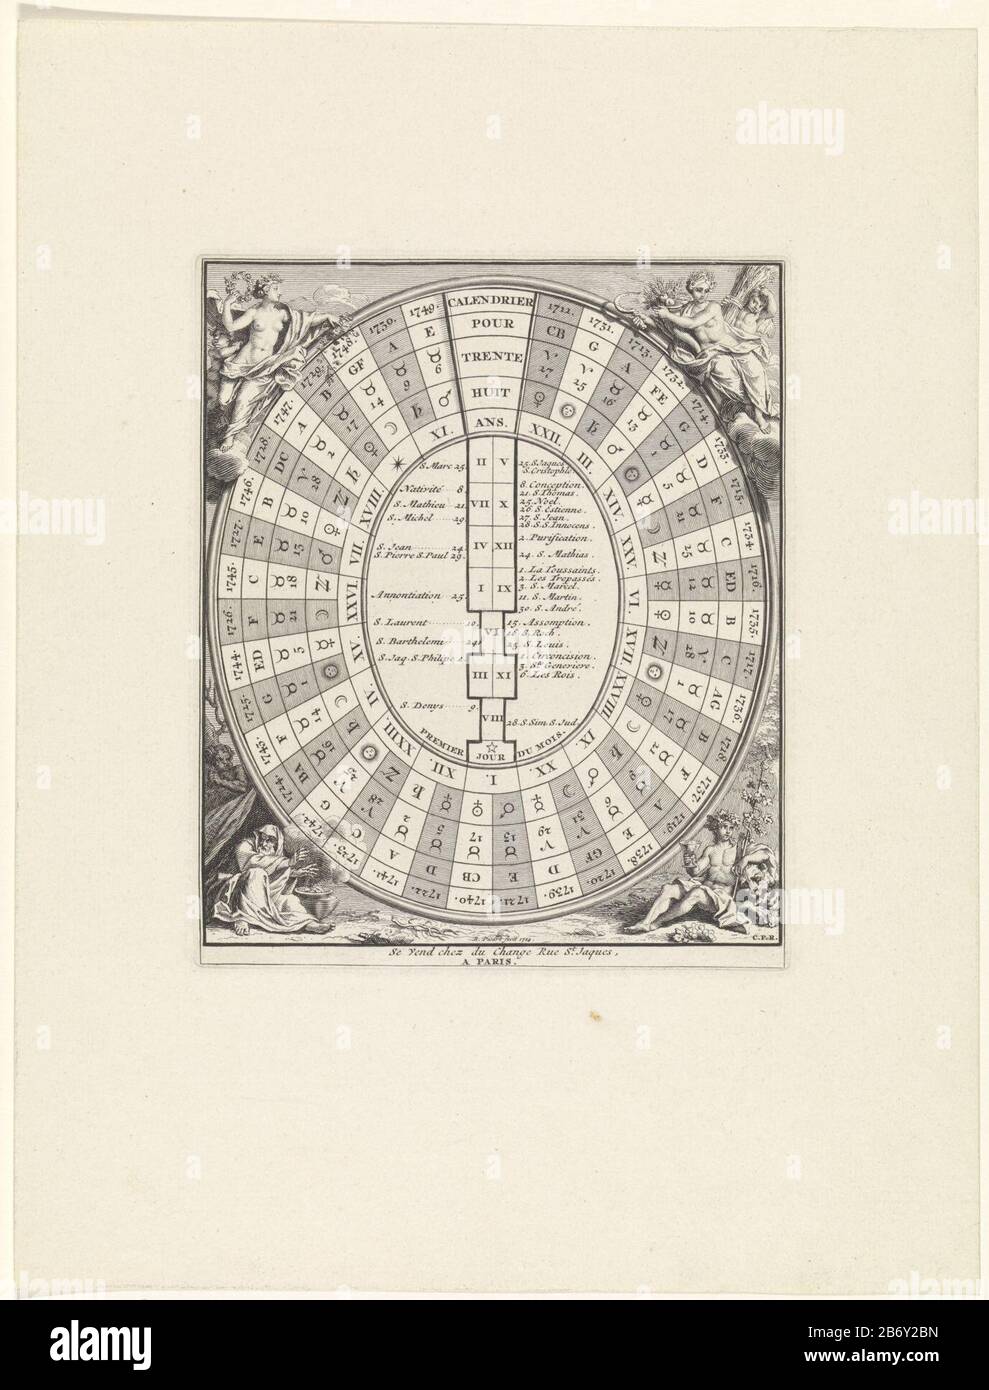 Kalender voor het jaar 1711 tot en met het jaar 1749 Calendrier pour trente  huit ans (titel op object) un calendario oval para el año 1711 al año 1749.  En medio de